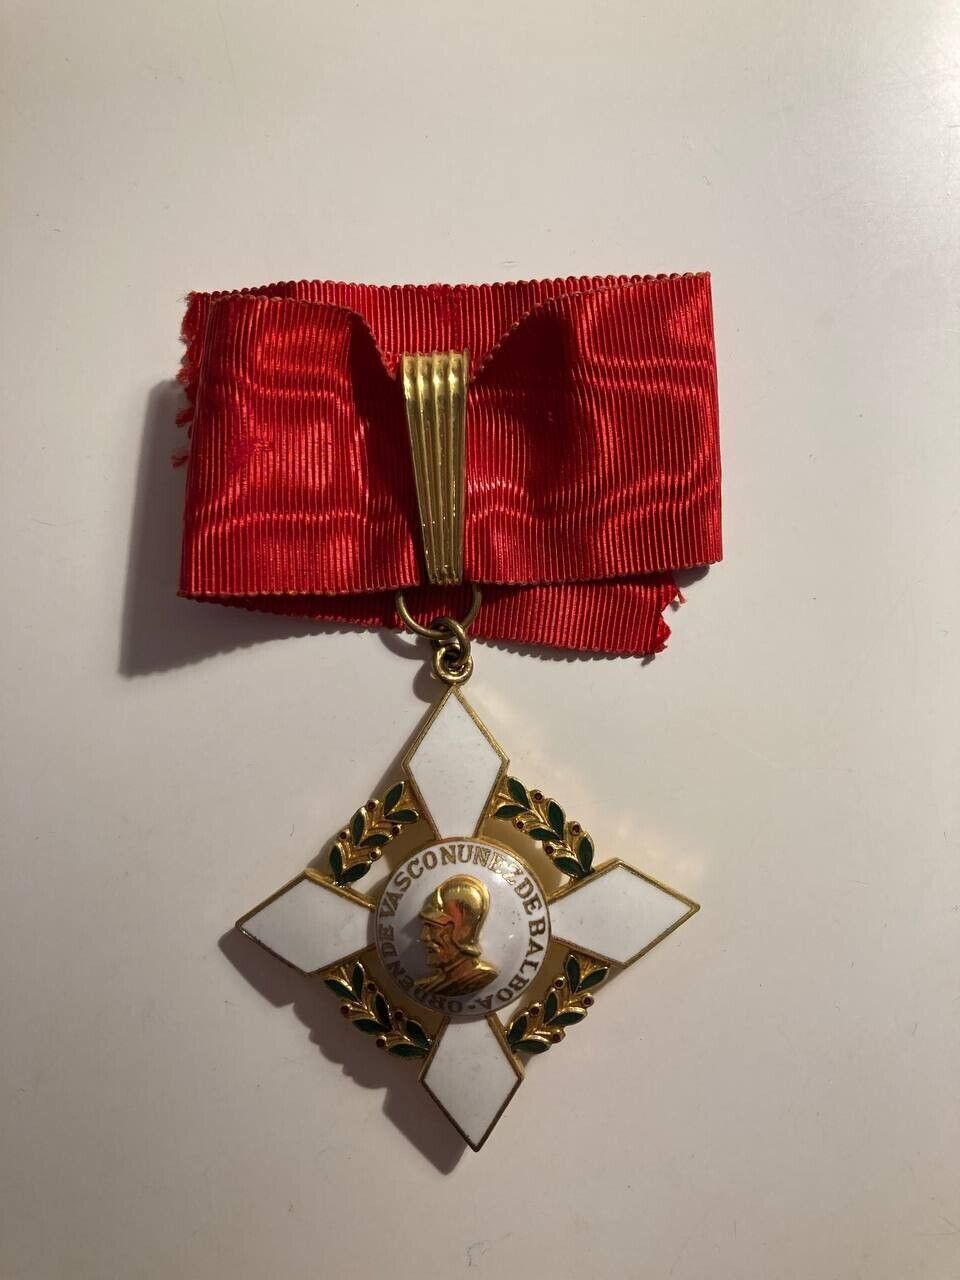 Panama. Order of Vasco Nunez De Balboa 3rd class commander